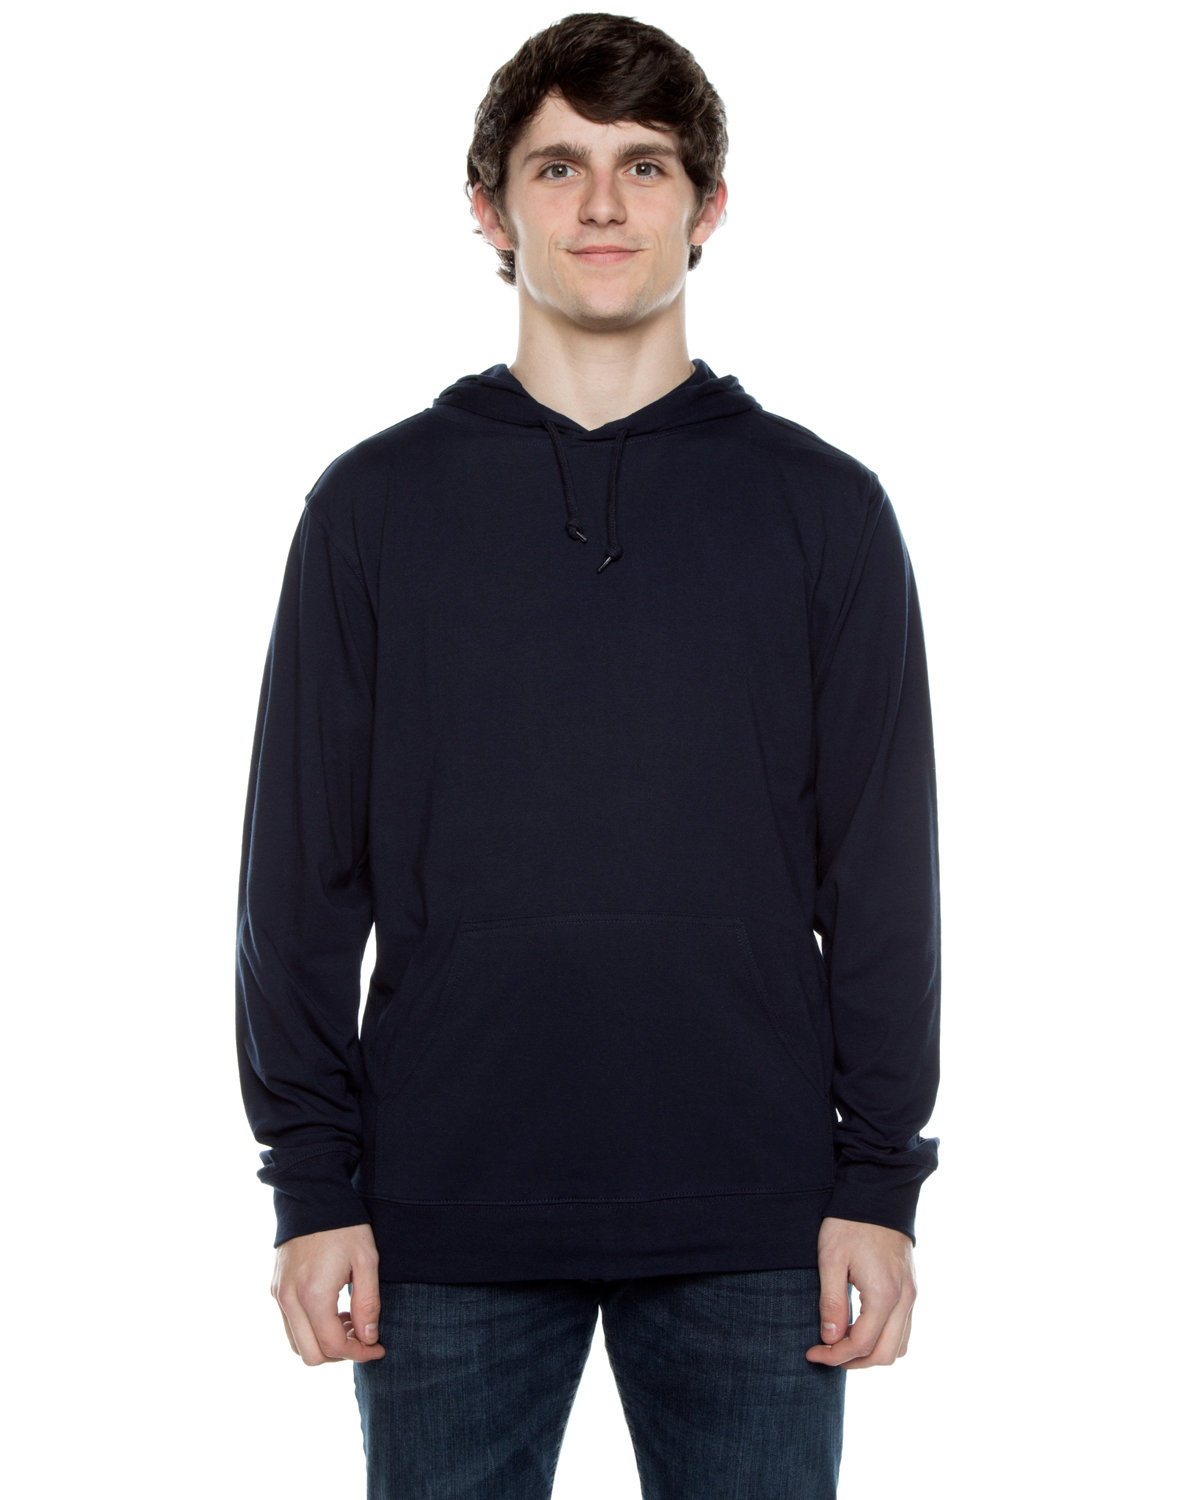 Beimar Drop Ship Unisex 4.5 oz. Long-Sleeve Jersey Hooded T-Shirt DEEP NAVY 